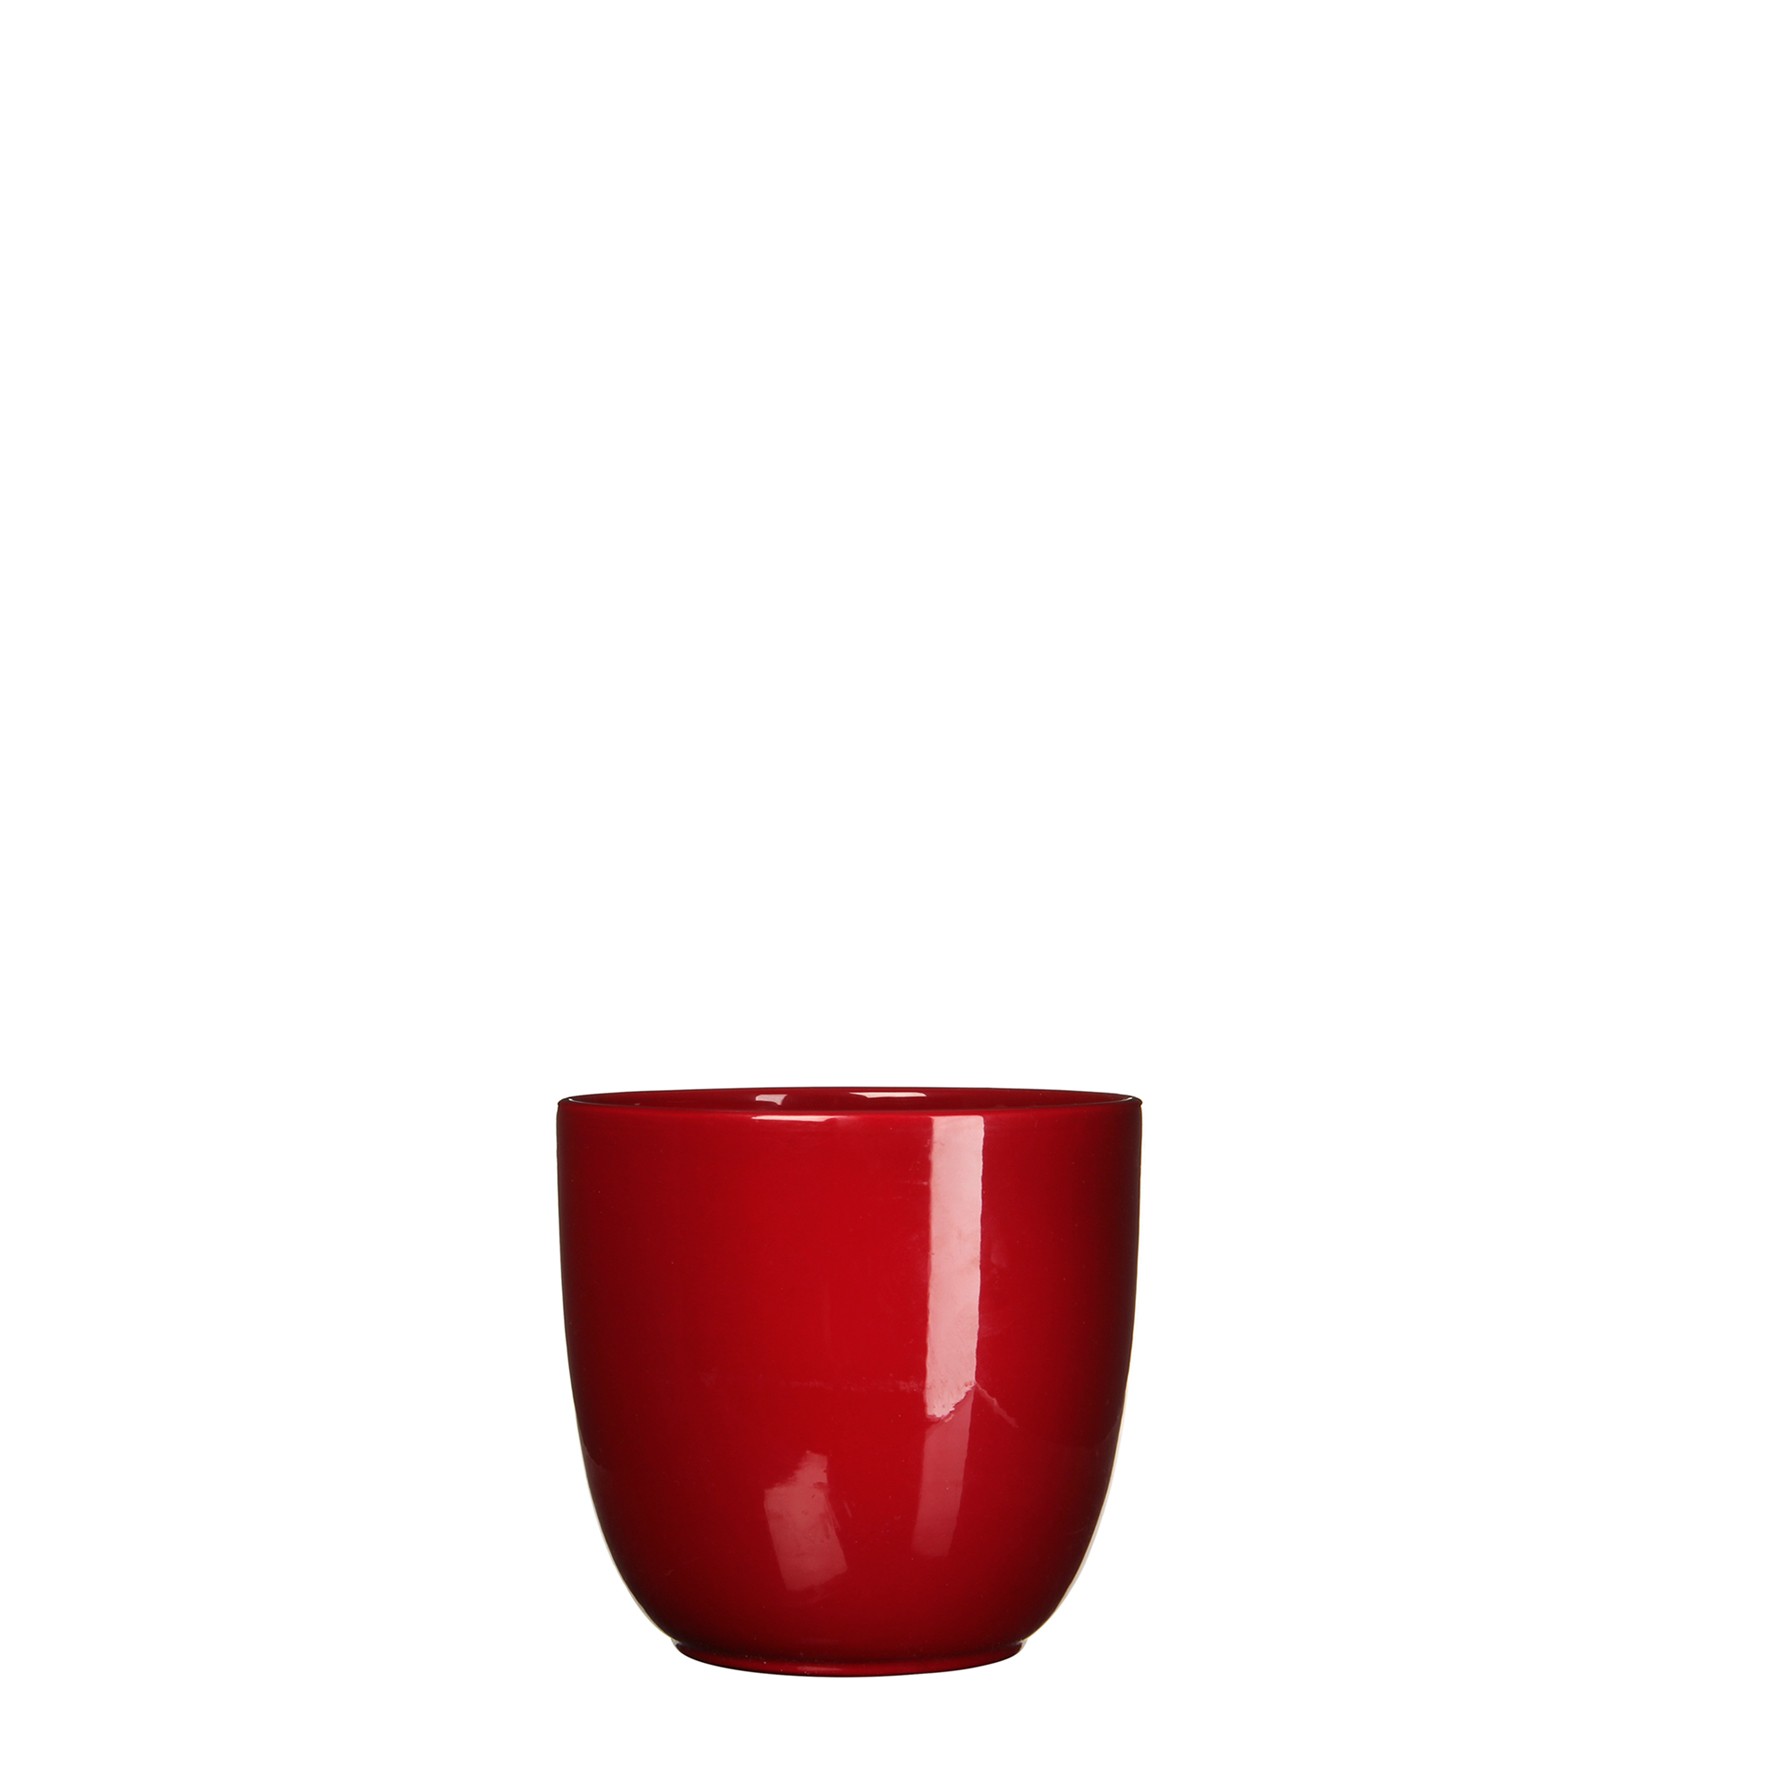 Bloempot Pot rond es/10.5 tusca 11 x 12 cm d.rood Mica - Mica Decorations